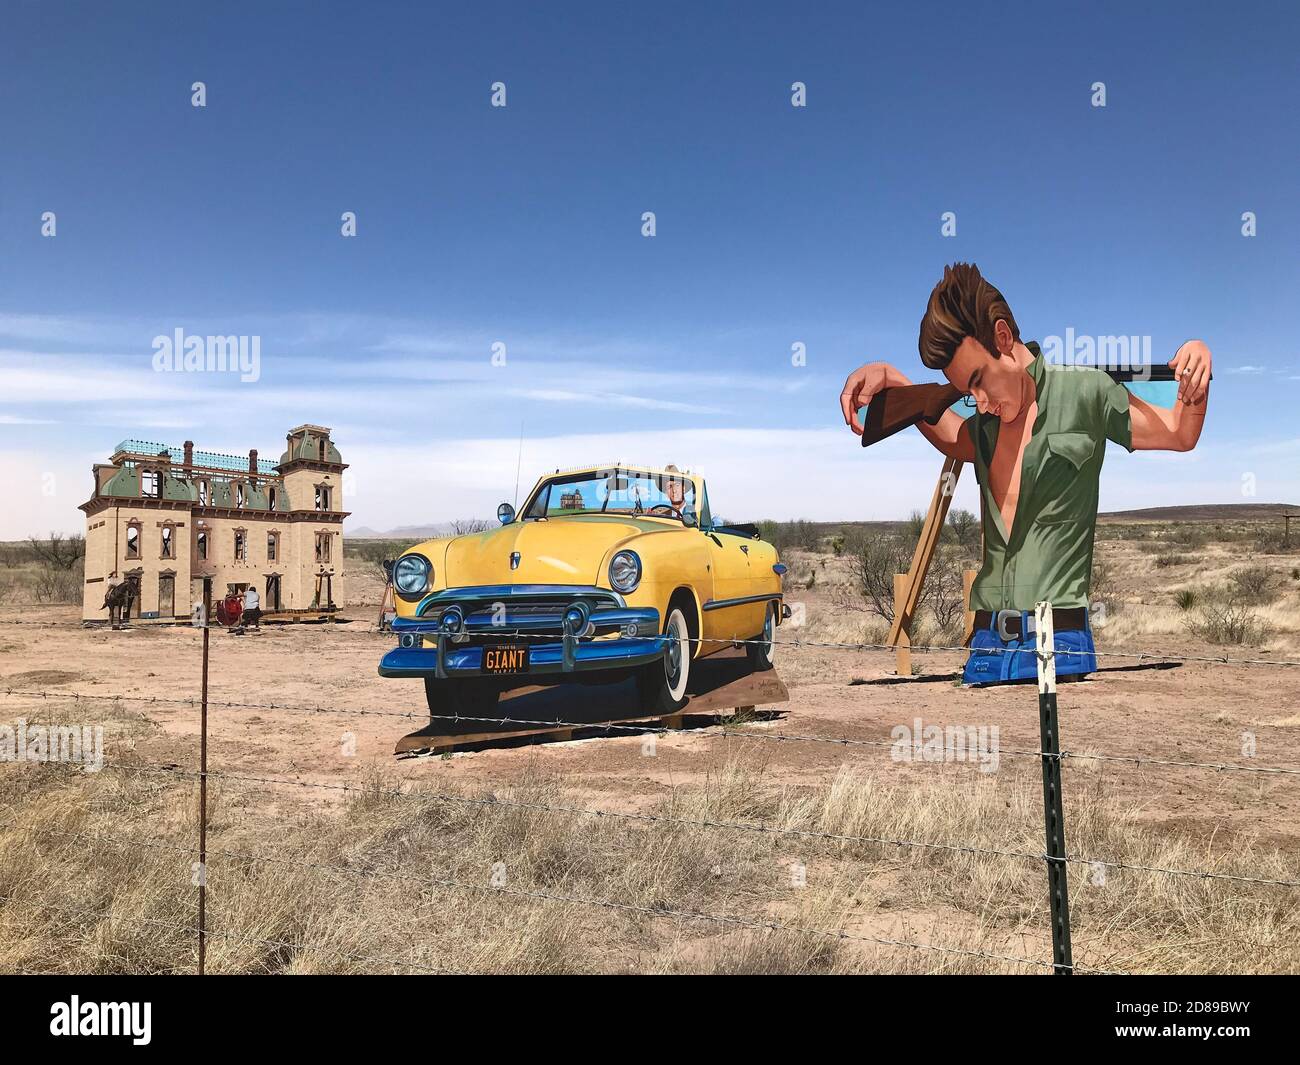 Questa arte a bordo strada vicino a Marfa, Texas, rende omaggio al film "Gigante", con James Dean e Liz Taylor. Gigante reso Marfa Texas famoso. Foto Stock